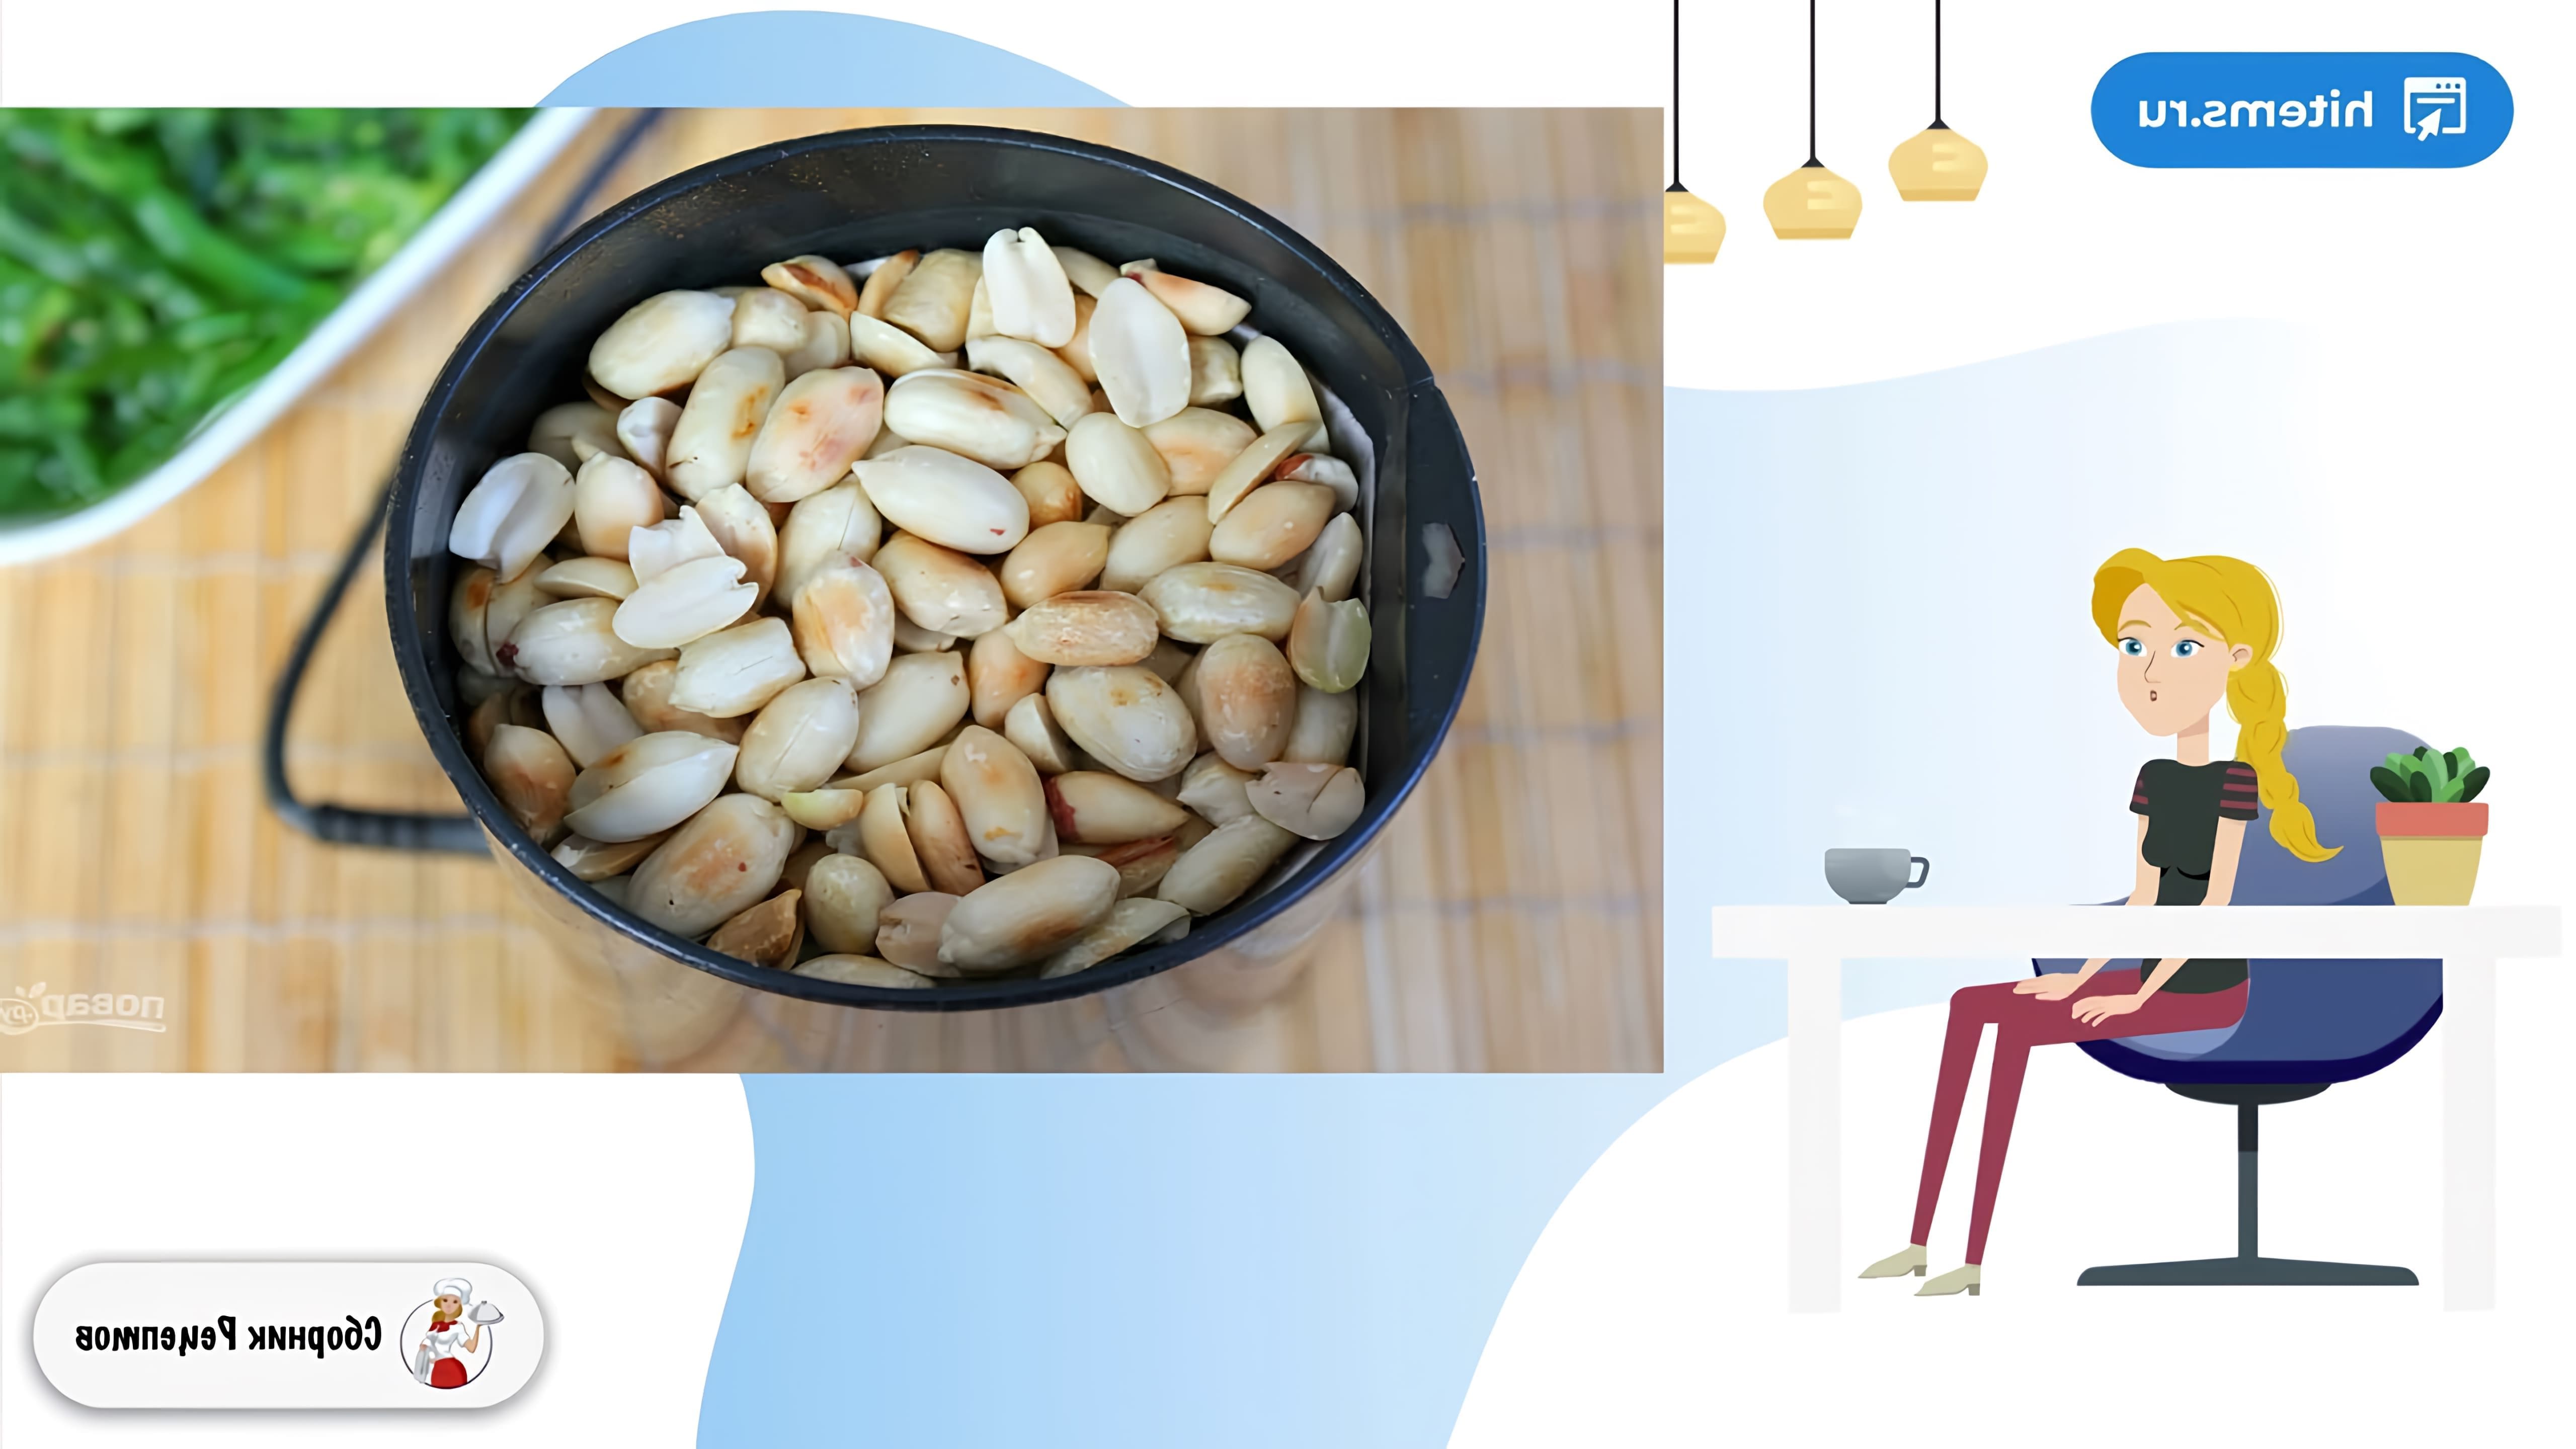 В этом видео демонстрируется рецепт орехового соуса для чуки, который можно использовать для дополнения основного блюда или приготовления салатов